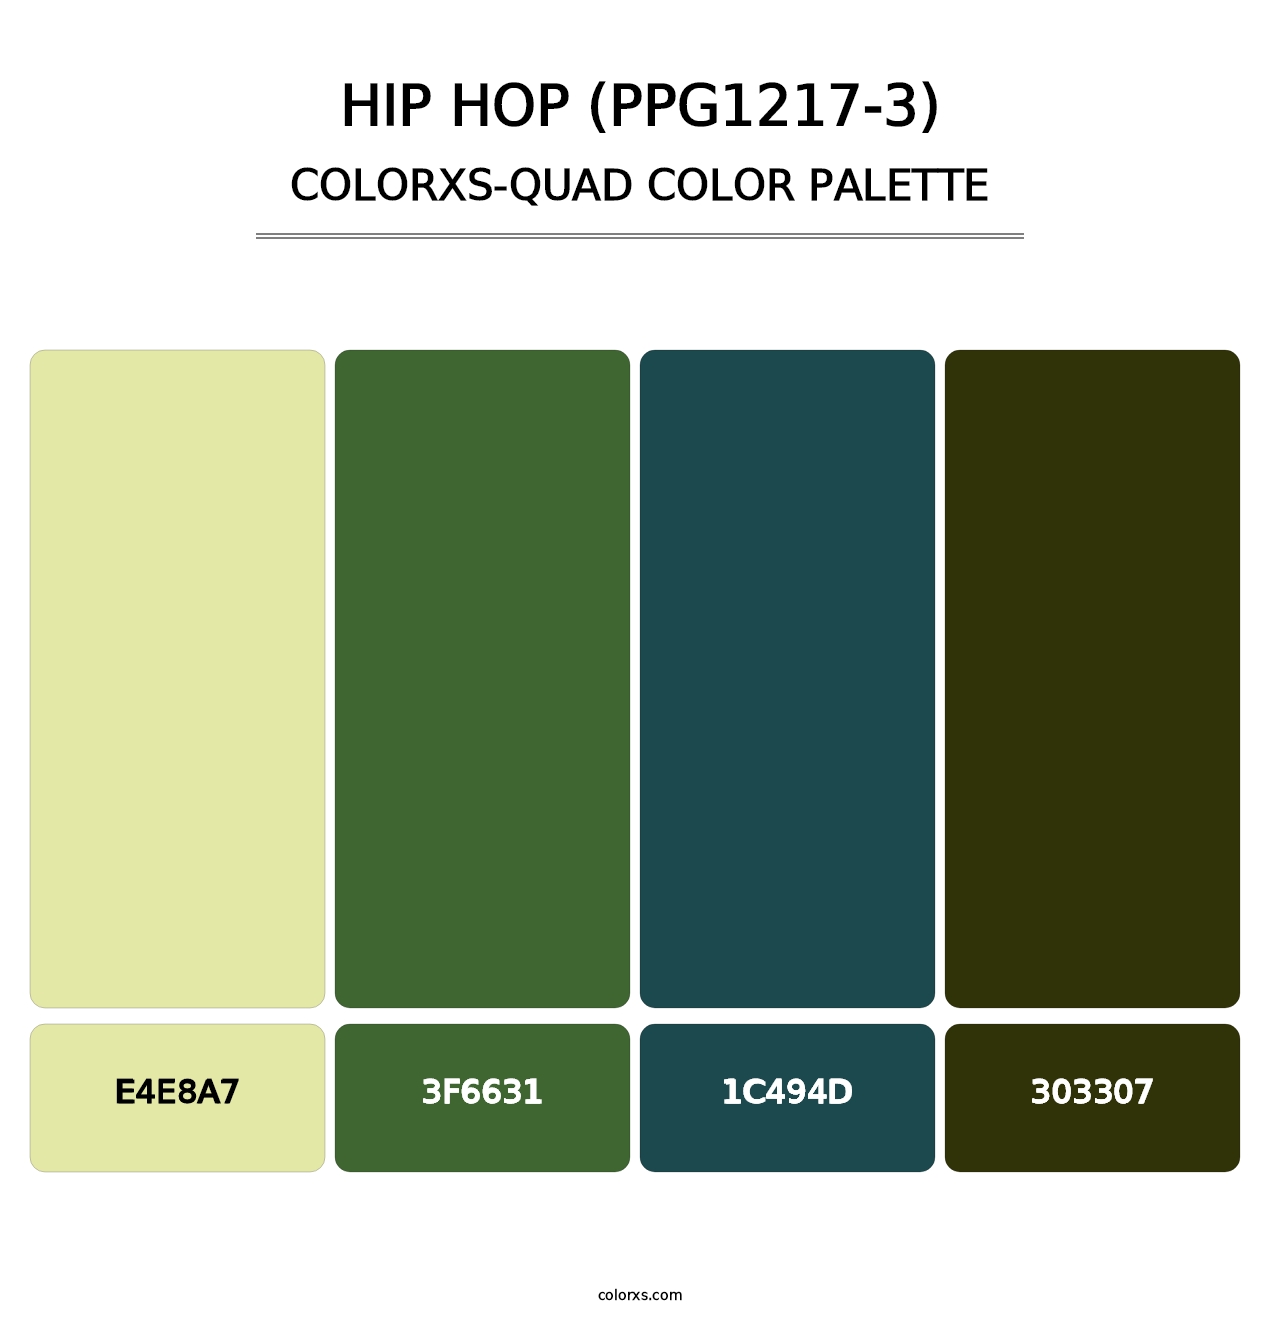 Hip Hop (PPG1217-3) - Colorxs Quad Palette